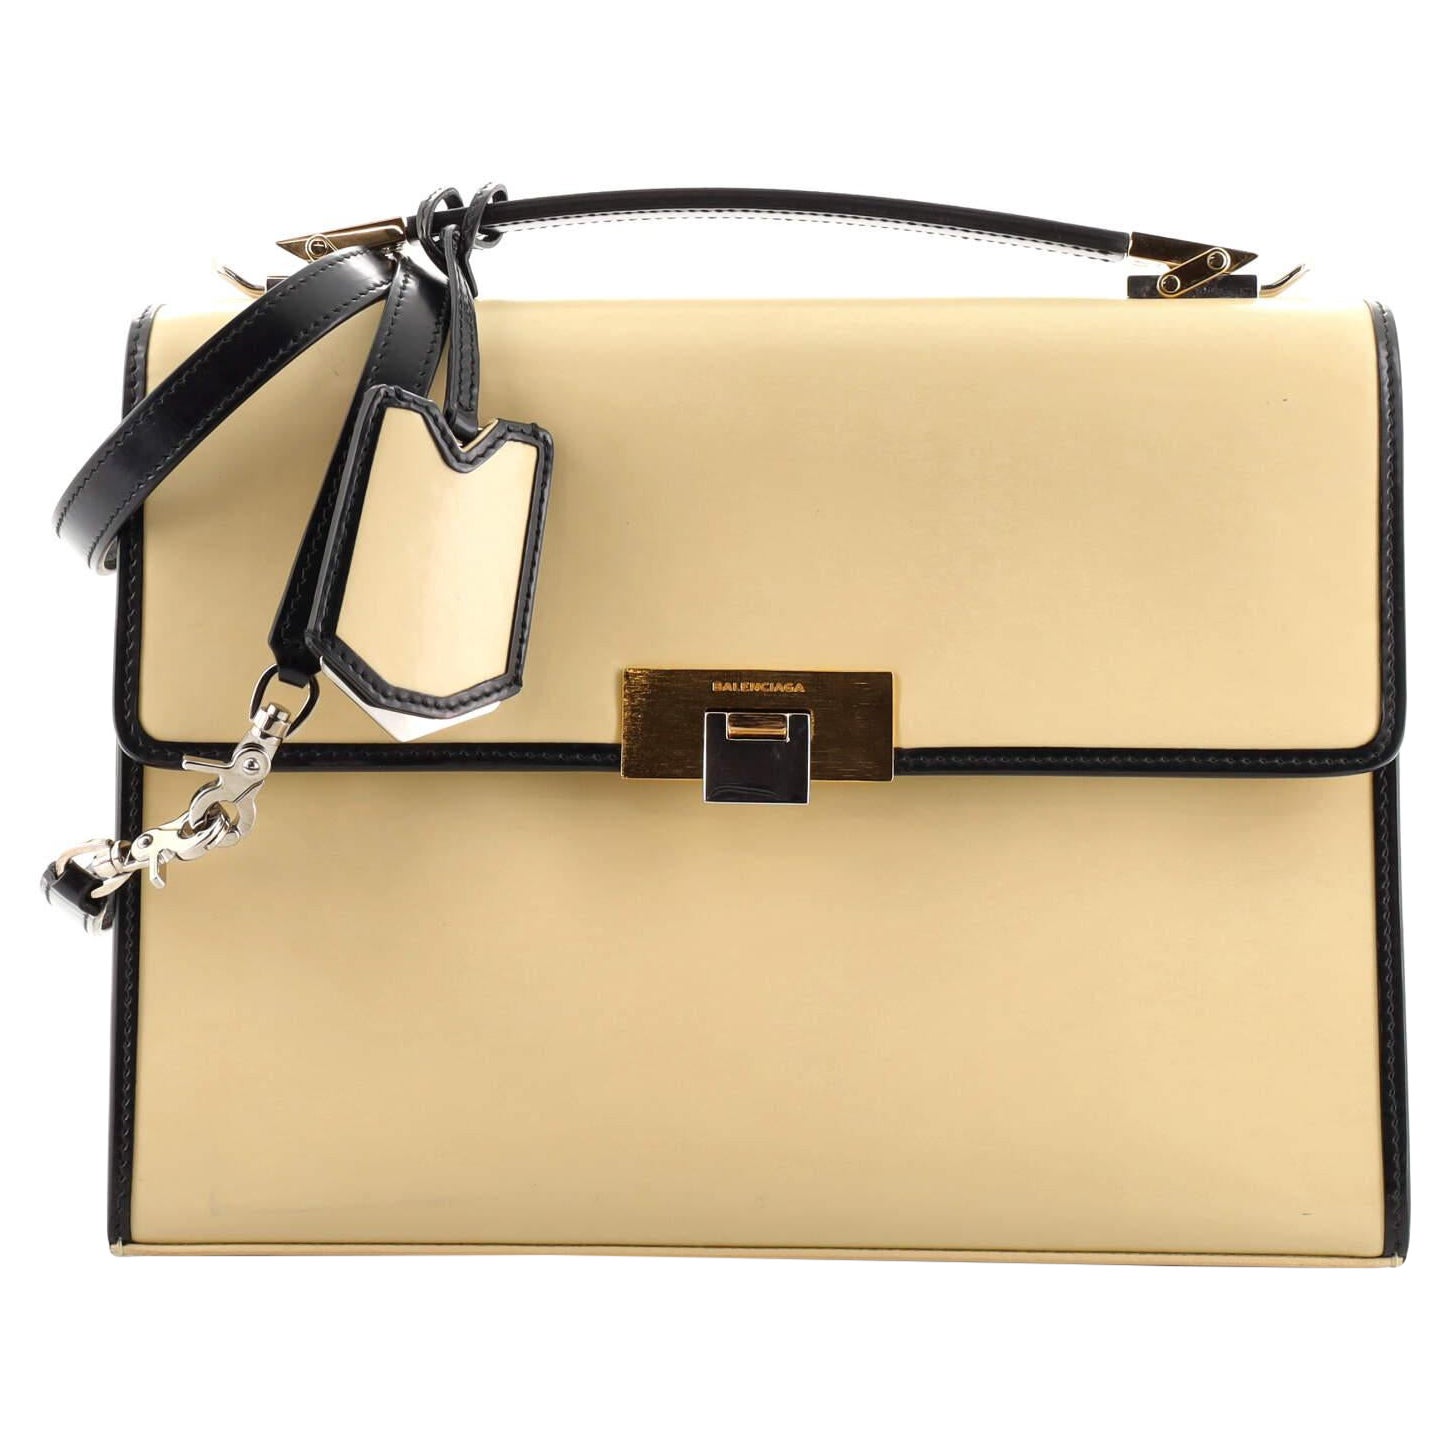  Balenciaga Le Dix Convertible Top Handle Bag Leather